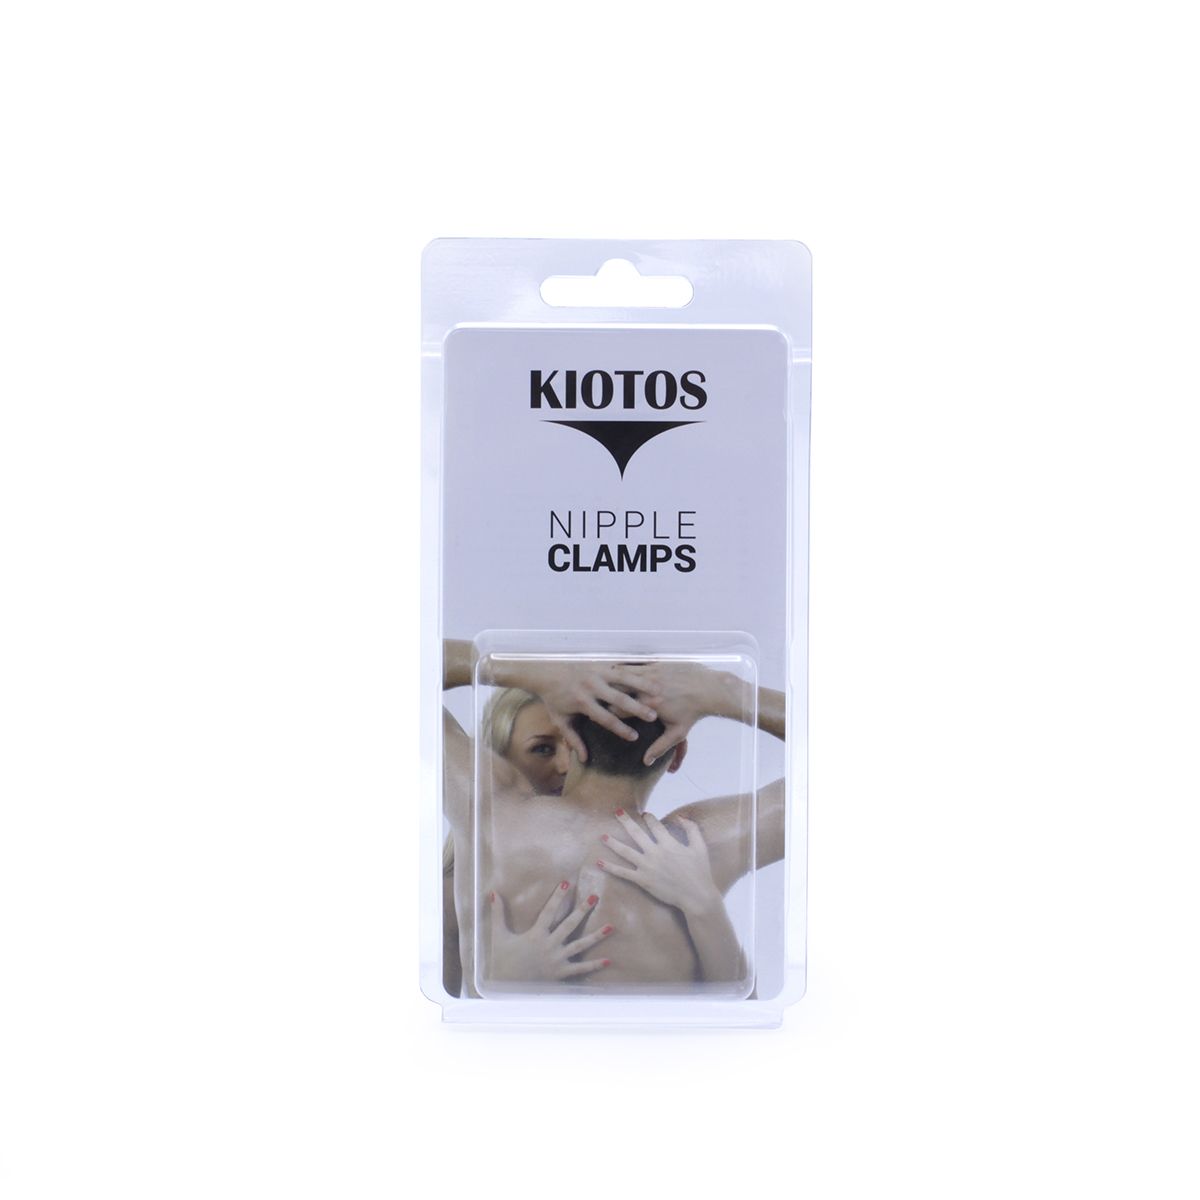 Kiotos Steel - Tepelklemmen - Nipple Adjustable Clamps 2x100g Gewichten - RVS - Zwart-Erotiekvoordeel.nl